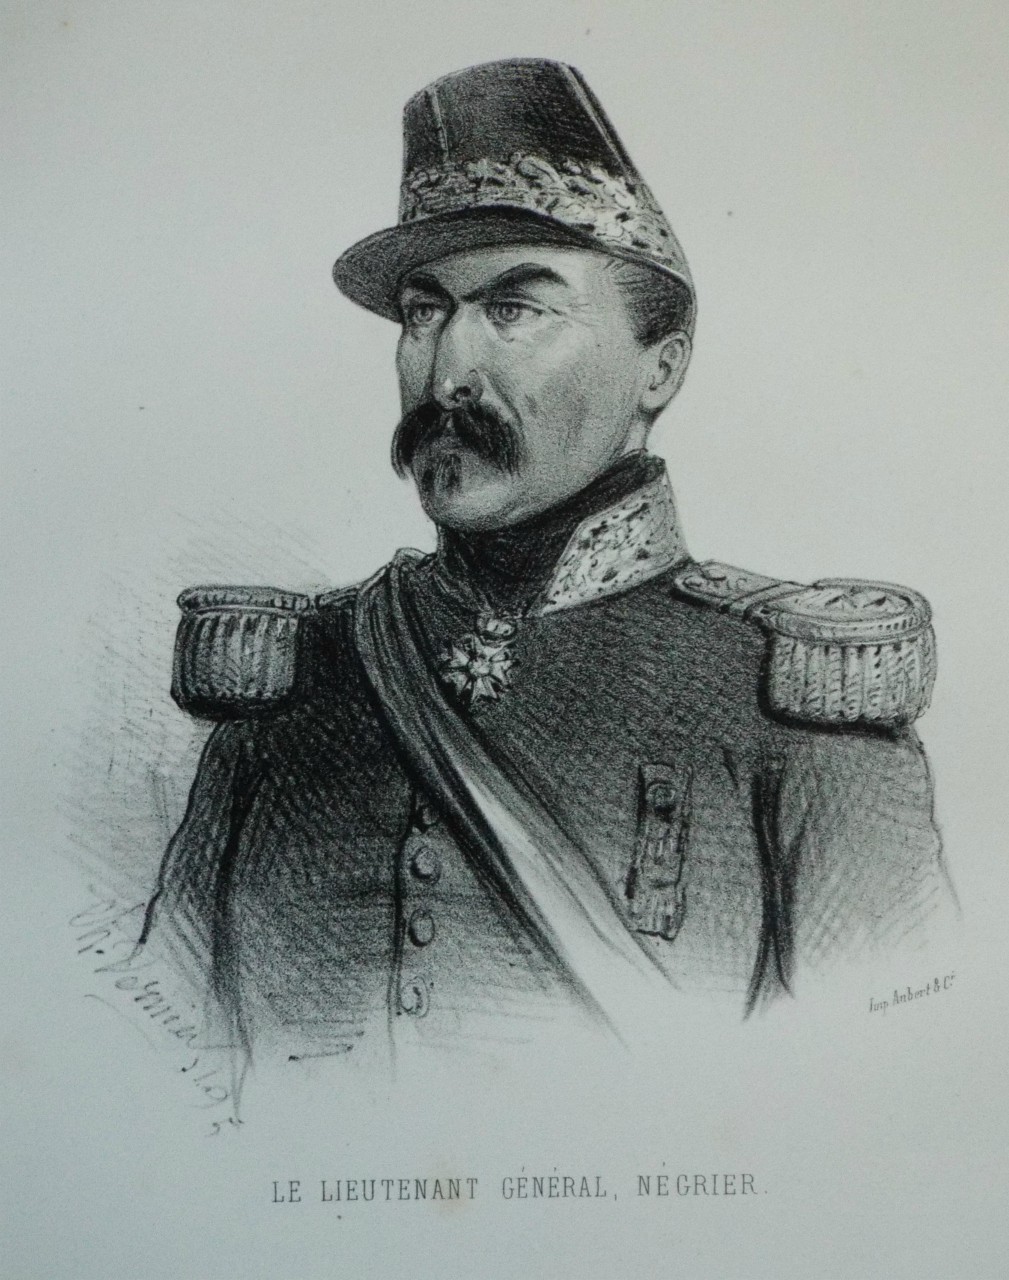 Lithograph - Le Lieutenant General, Negrier.